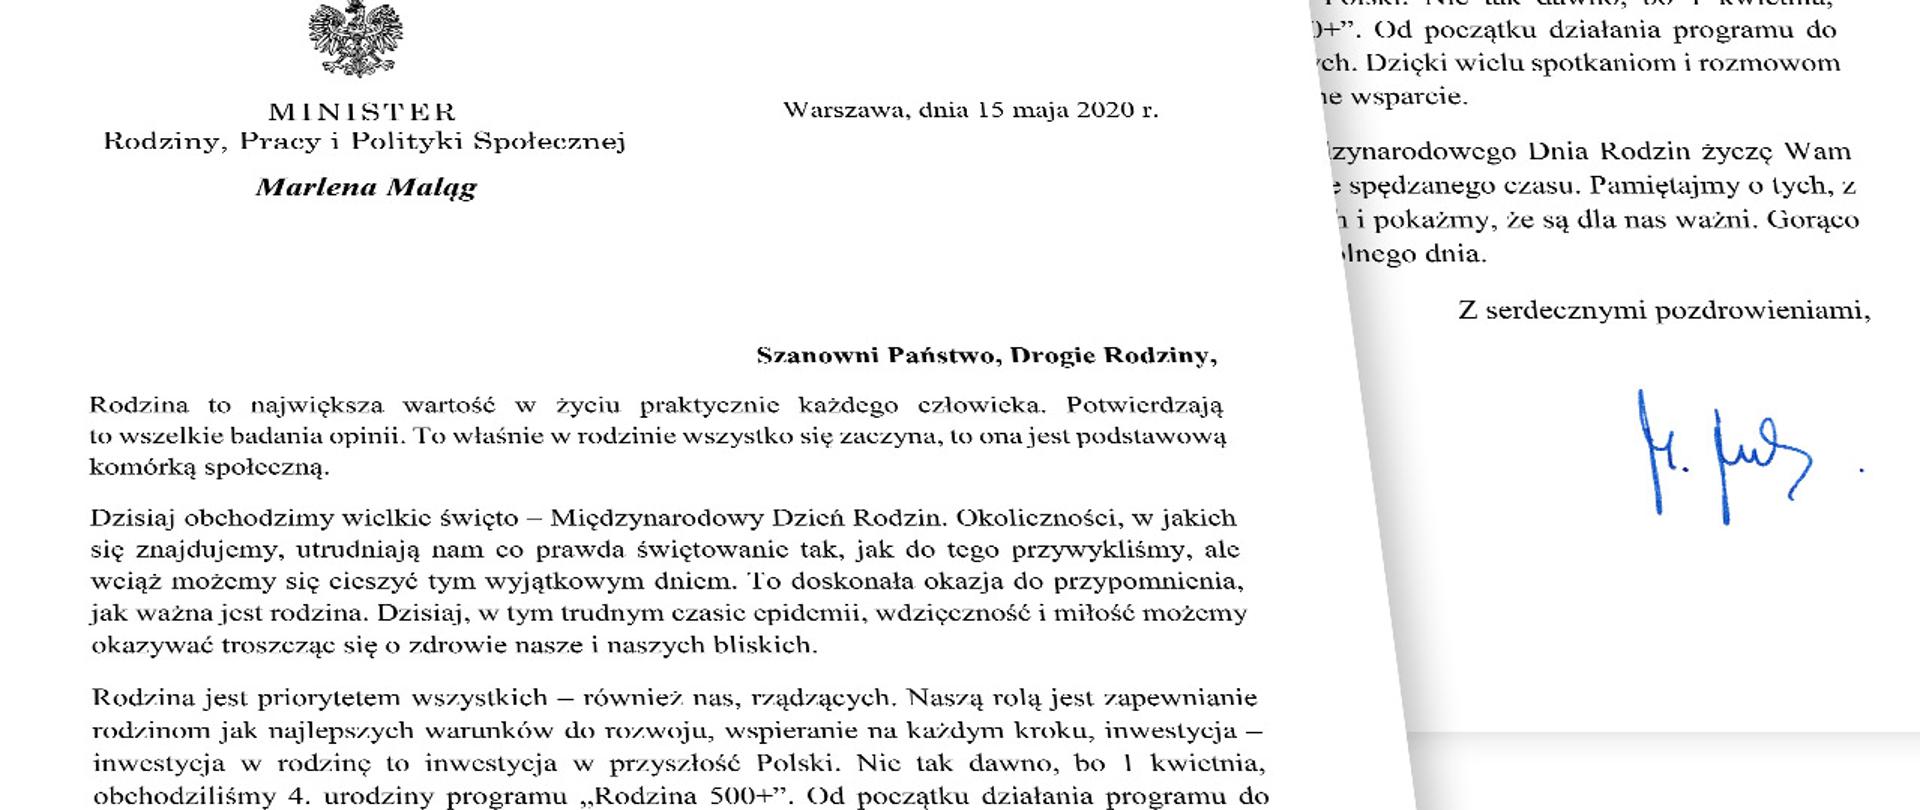 Zdjęcie listu minister Maląg